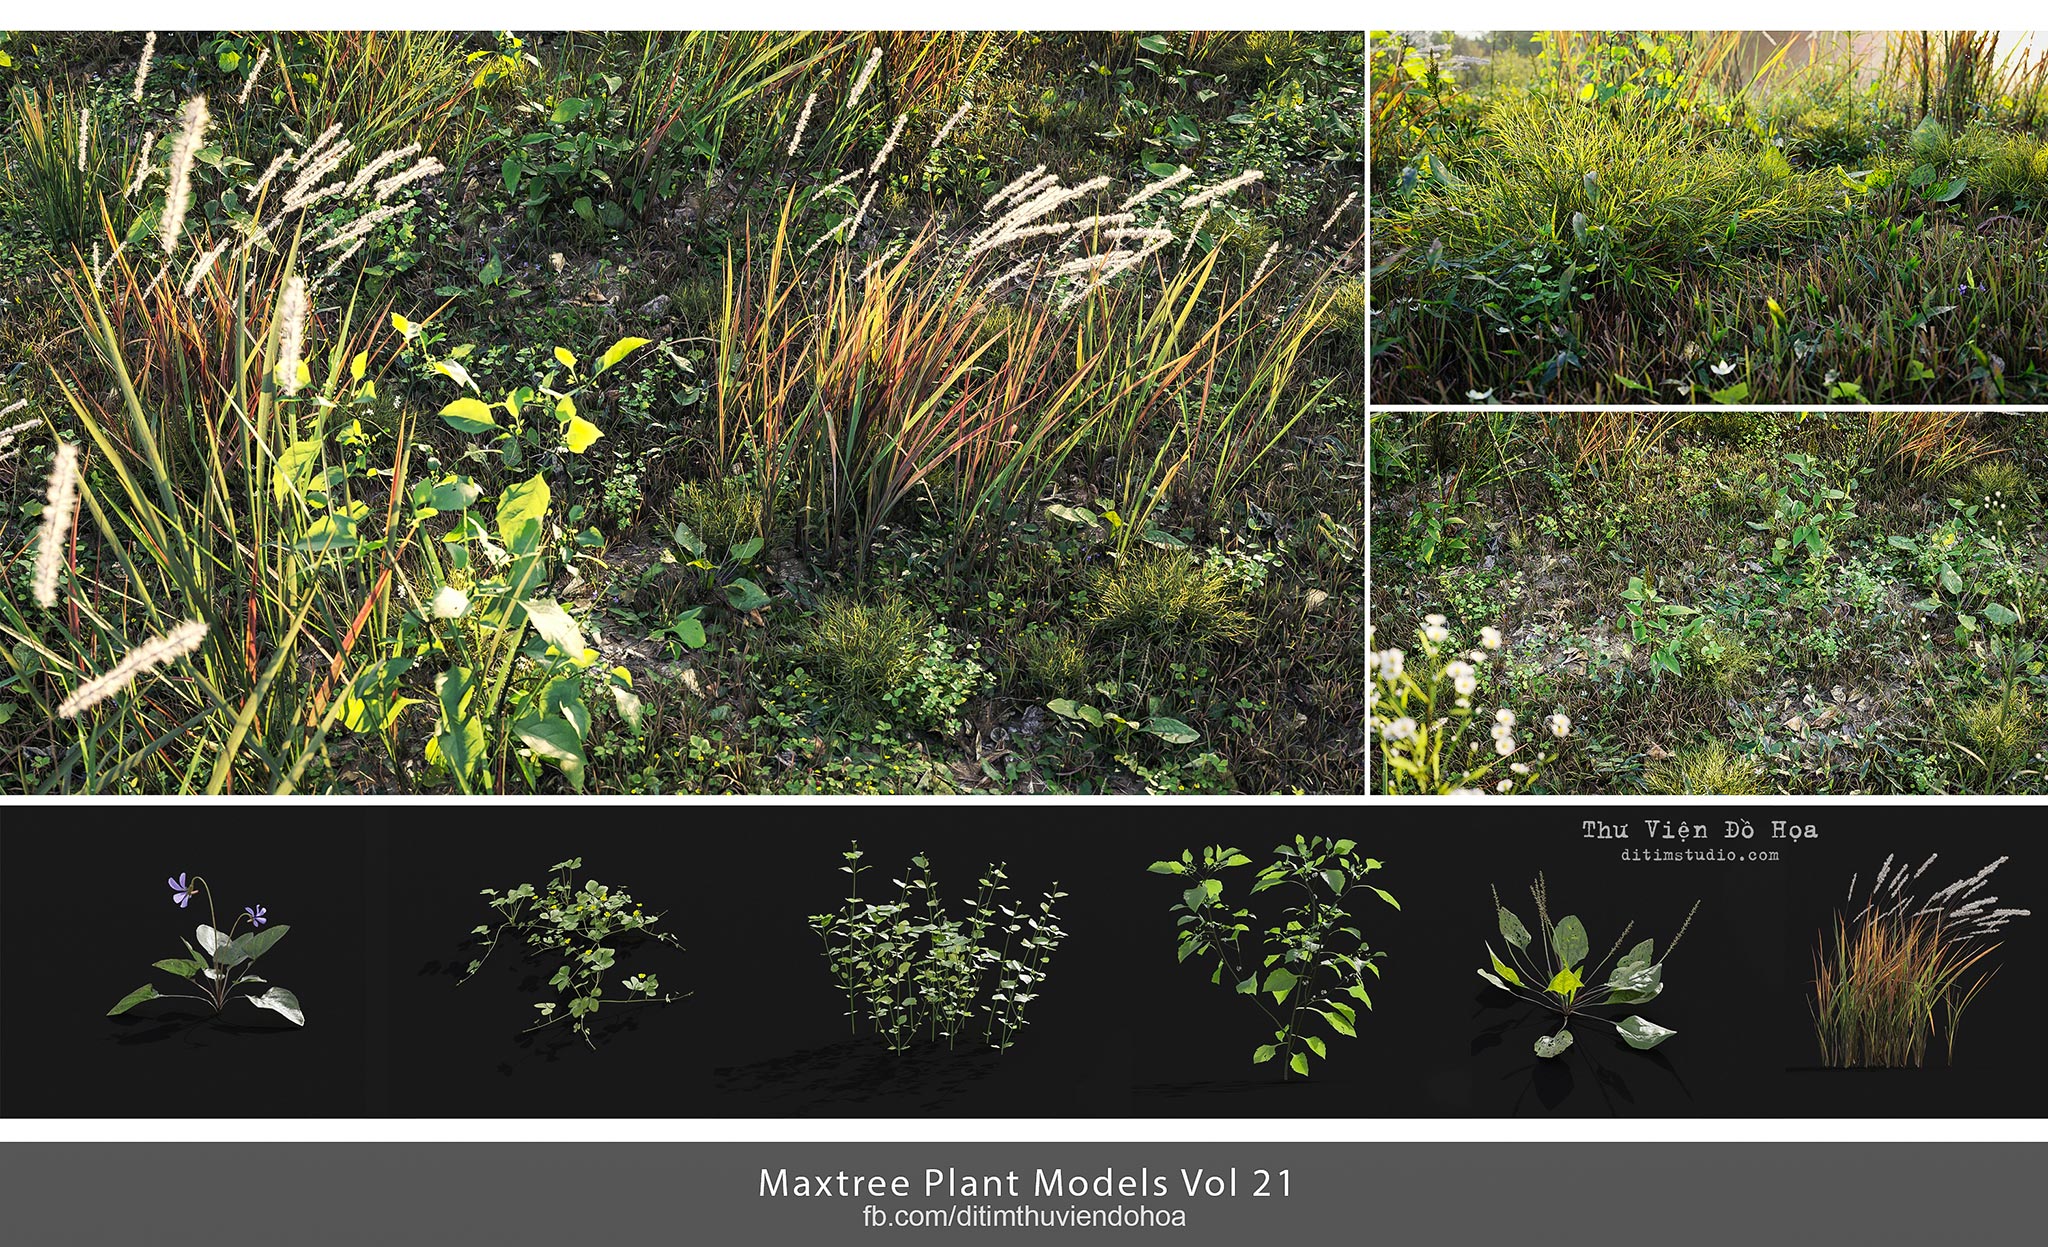 [ 3dsmax ] Maxtree Plant Models Vol 21